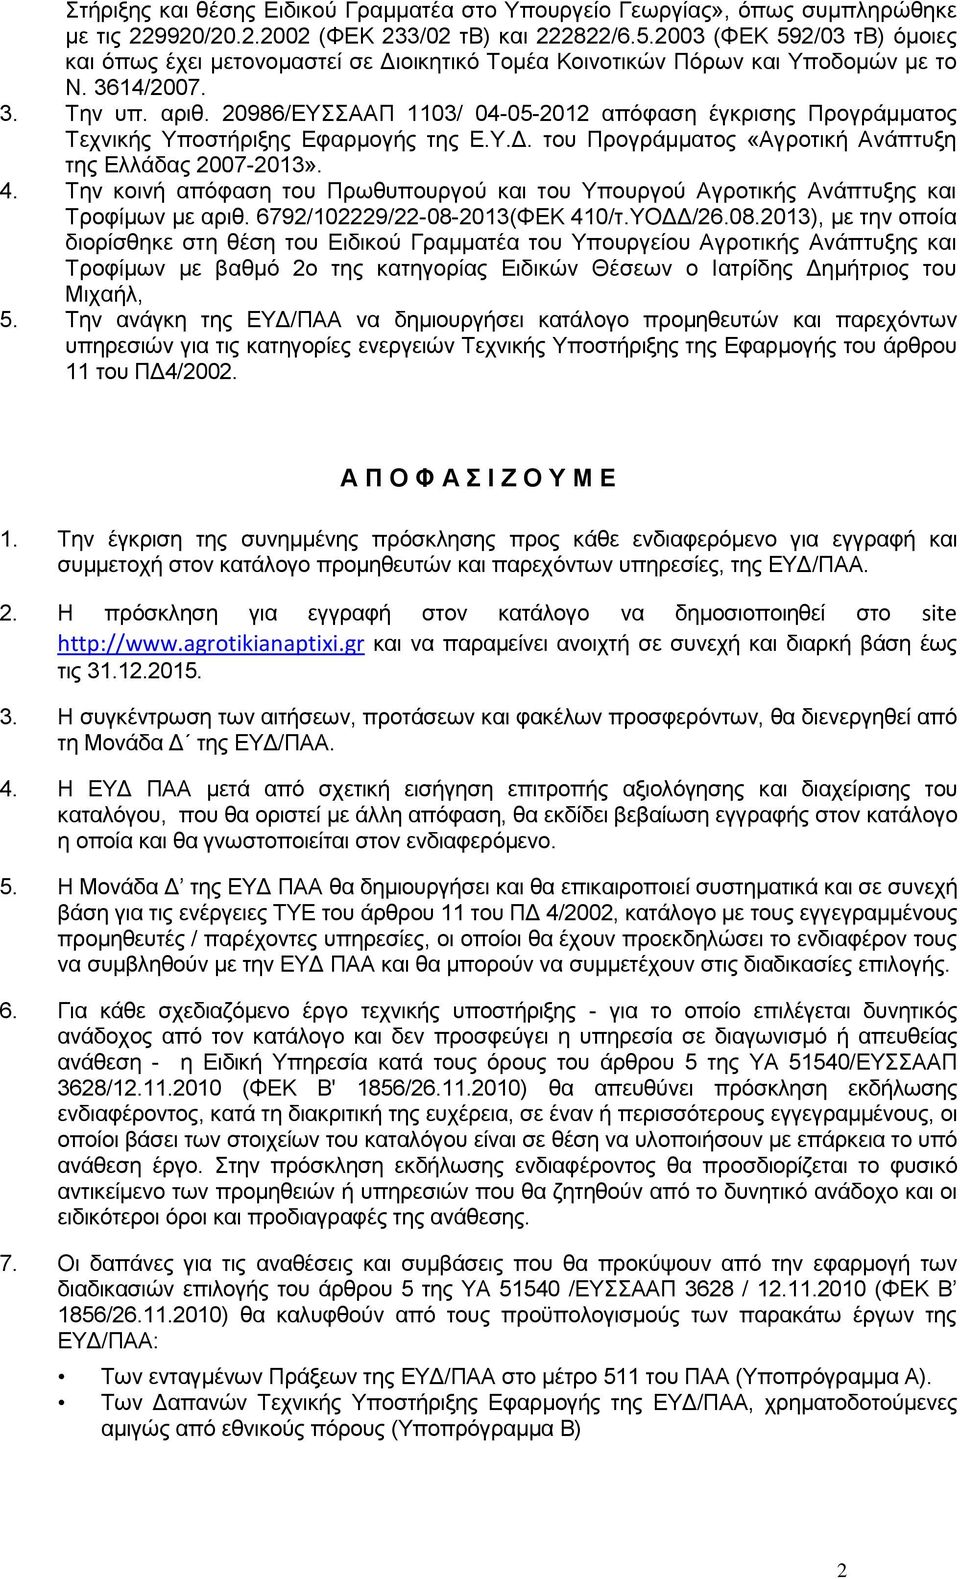 20986/ΕΥΣΣΑΑΠ 1103/ 04-05-2012 απόφαση έγκρισης Προγράμματος Τεχνικής Υποστήριξης Εφαρμογής της Ε.Υ.Δ. του Προγράμματος «Αγροτική Ανάπτυξη της Ελλάδας 2007-2013». 4.